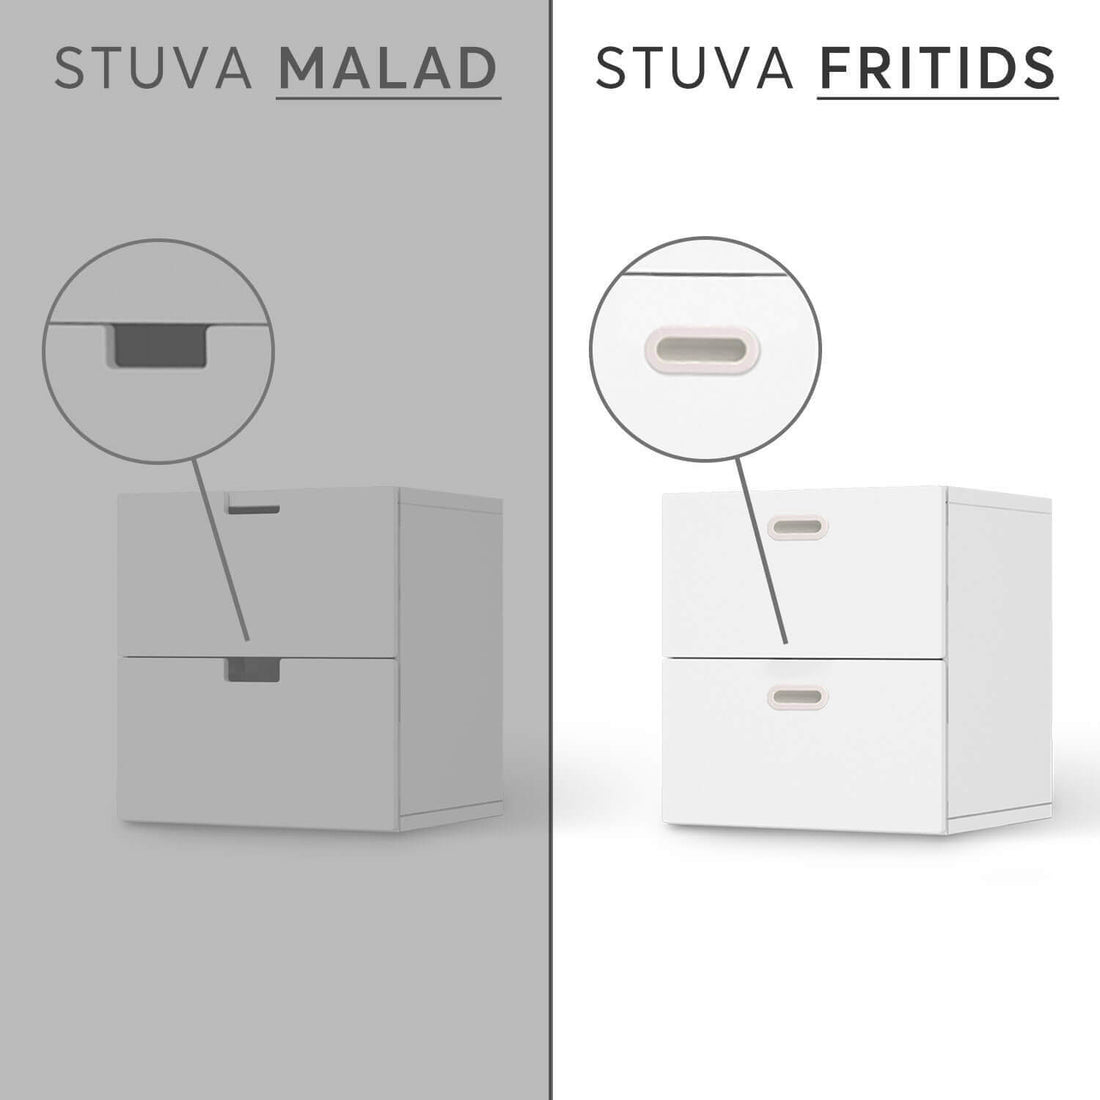 Vergleich IKEA Stuva Fritids / Malad - Green Tea Fields